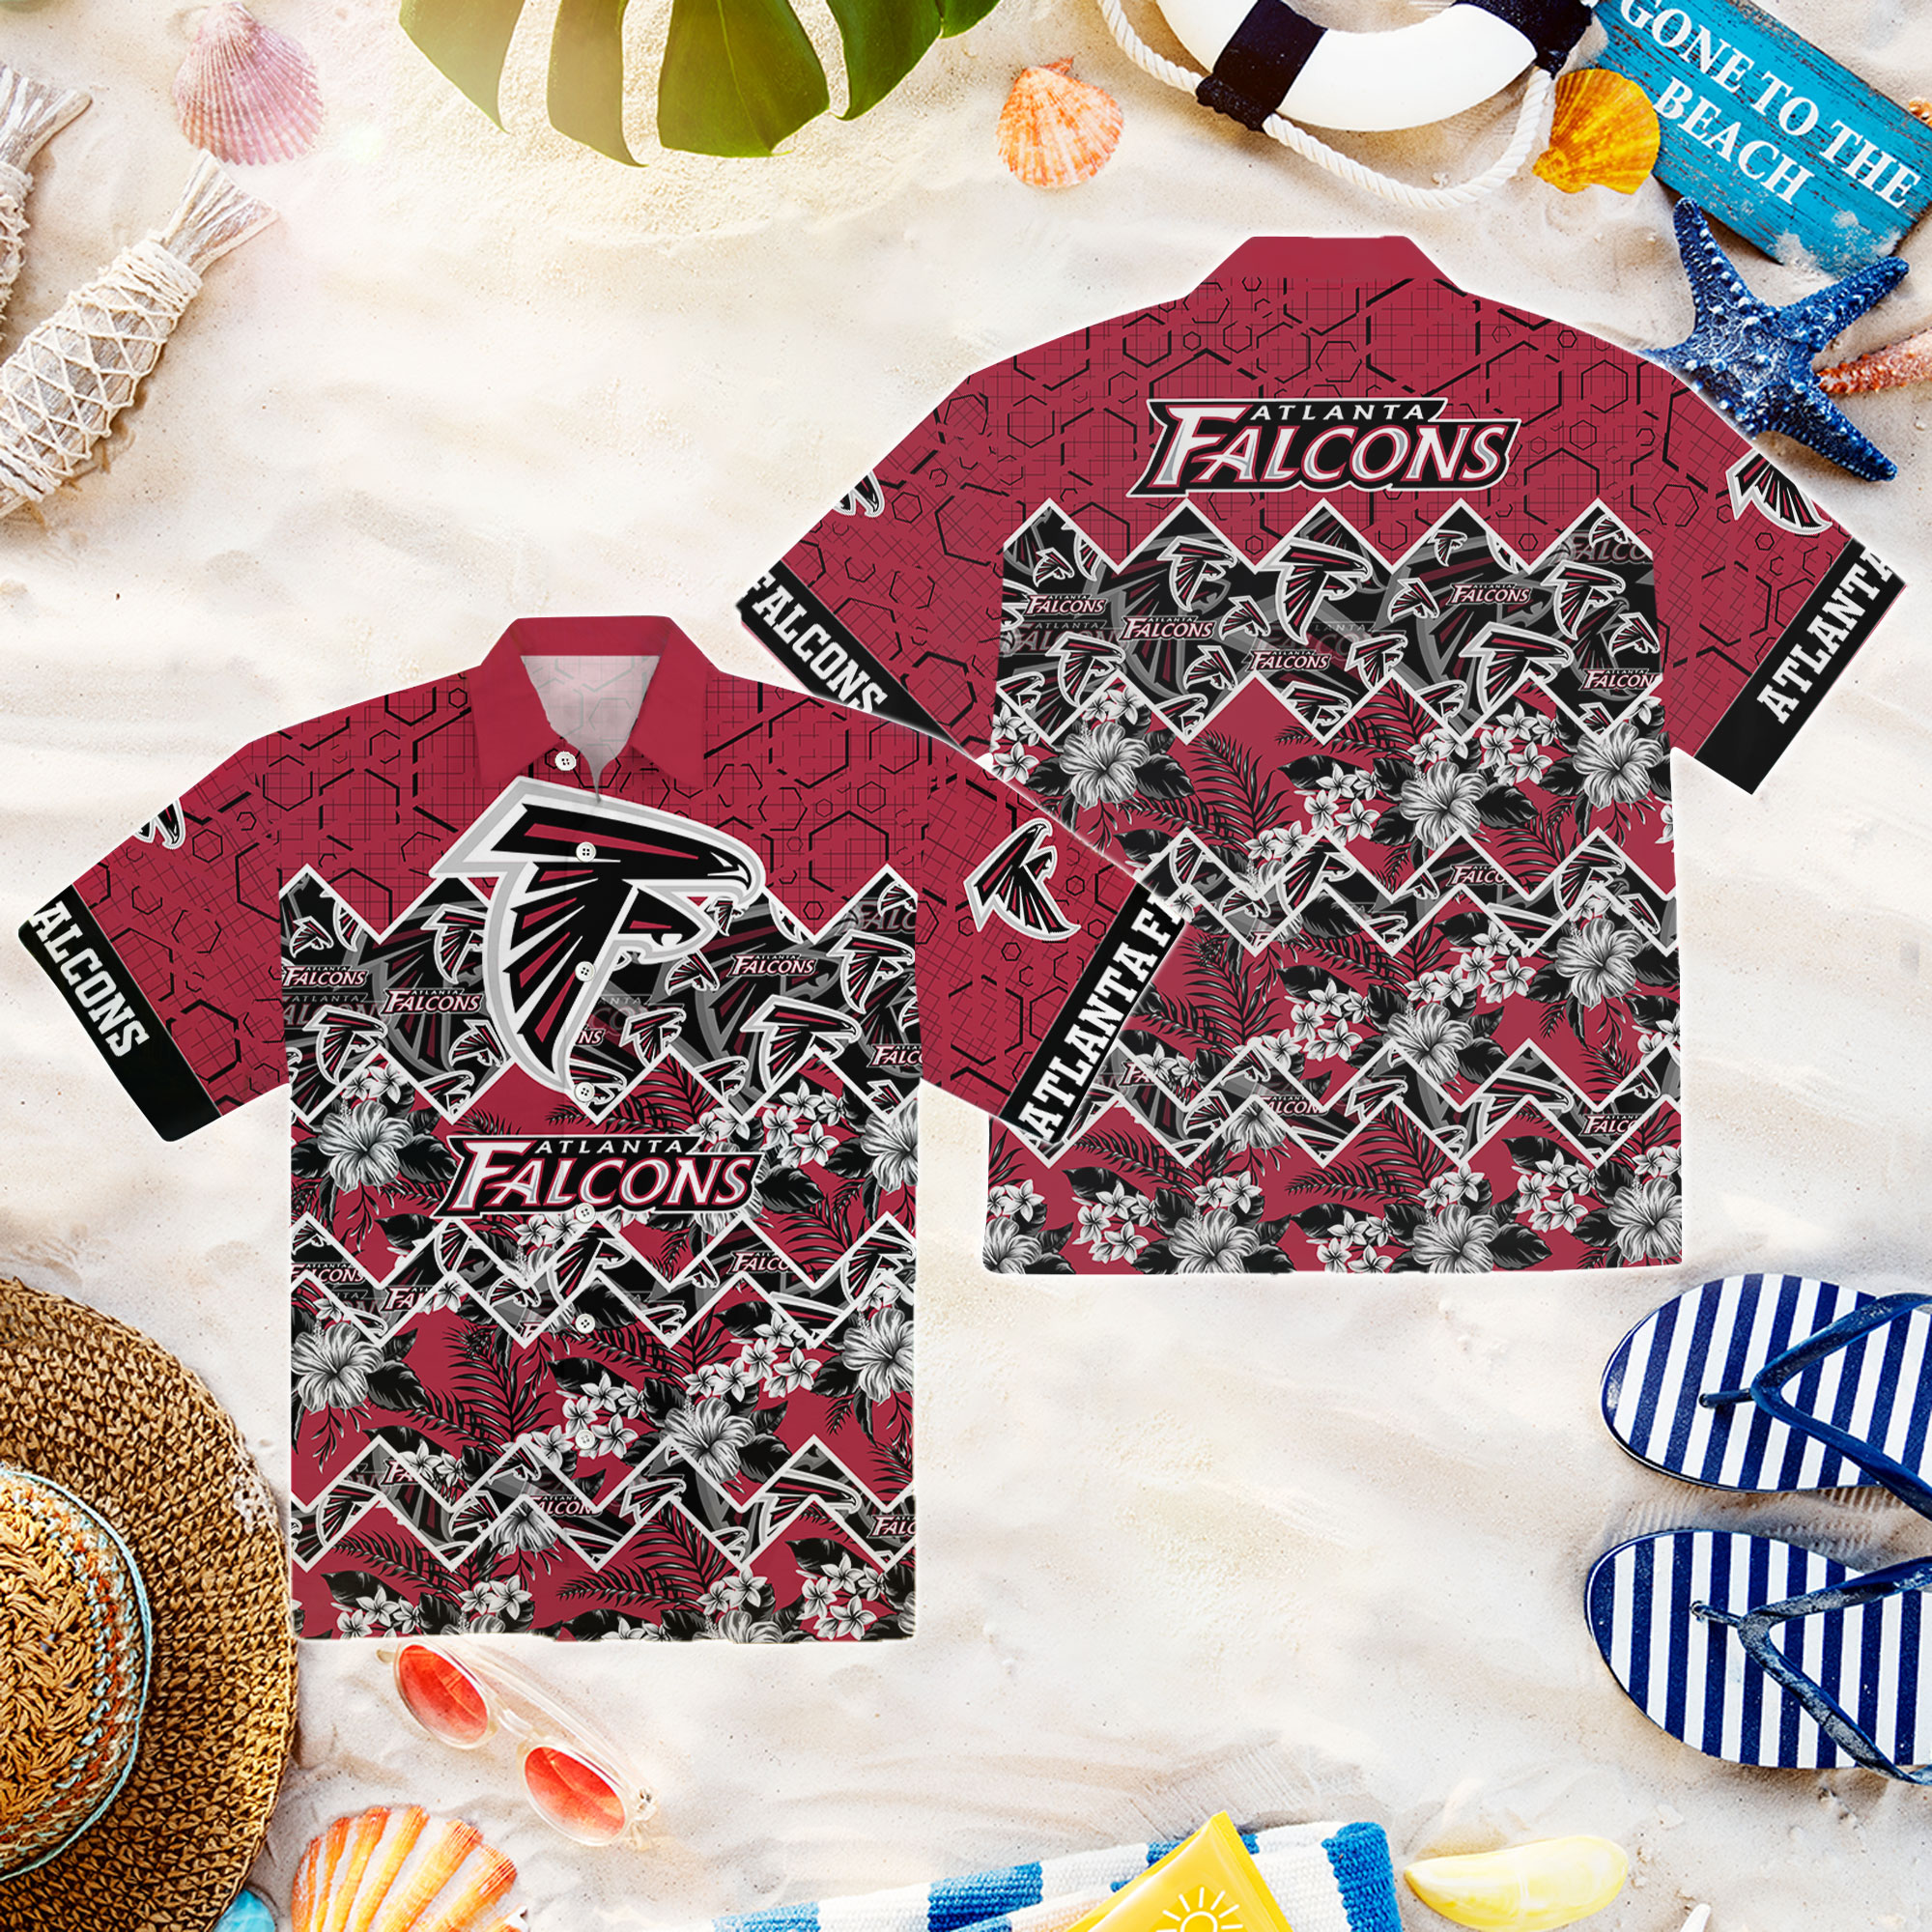 TRENDING] Atlanta Falcons NFL Hawaiian Shirt For New Season